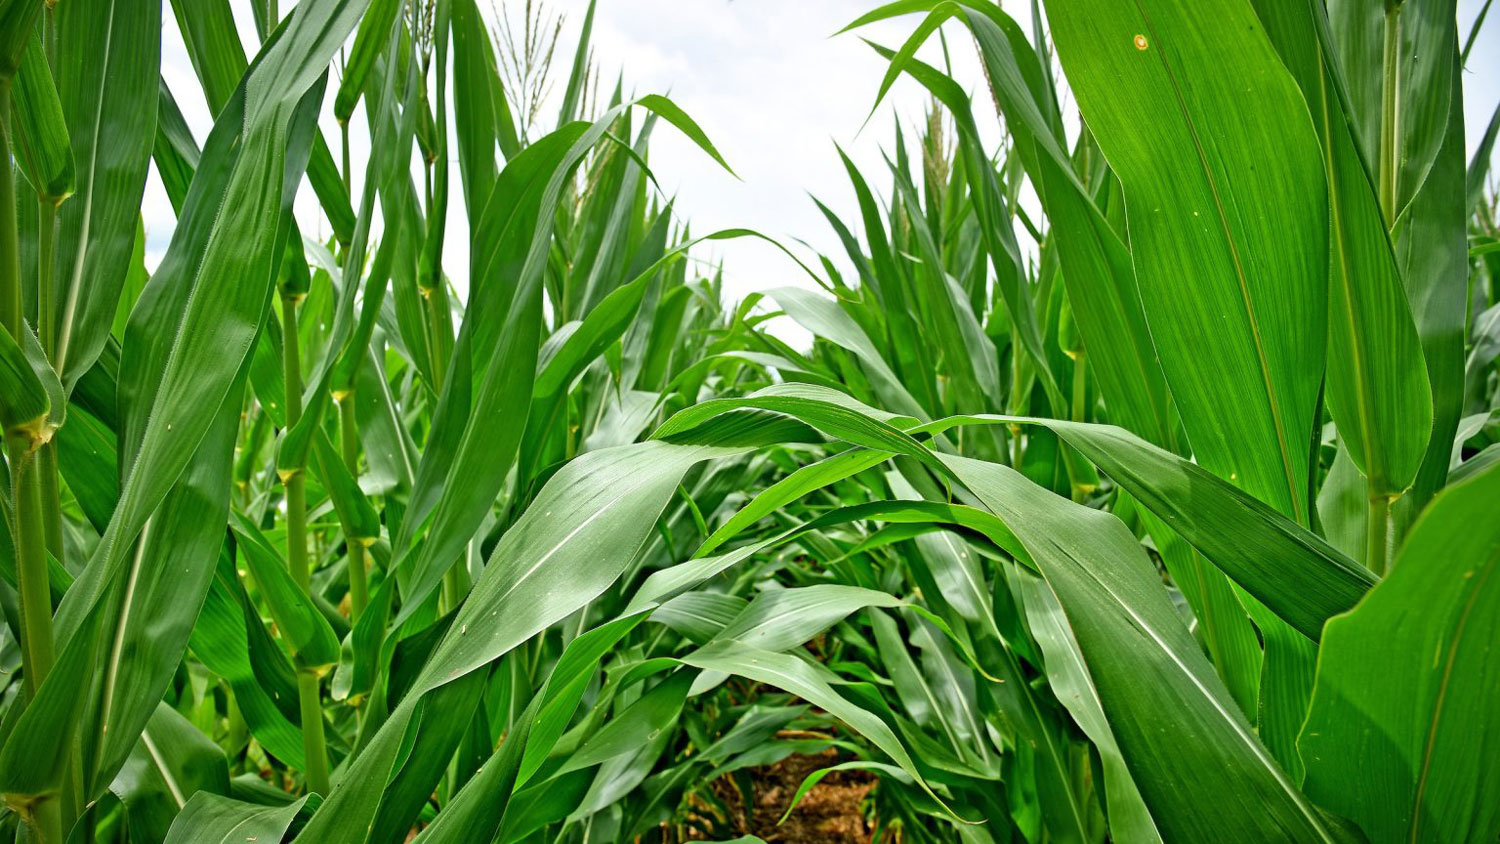 A corn field in North Carolina